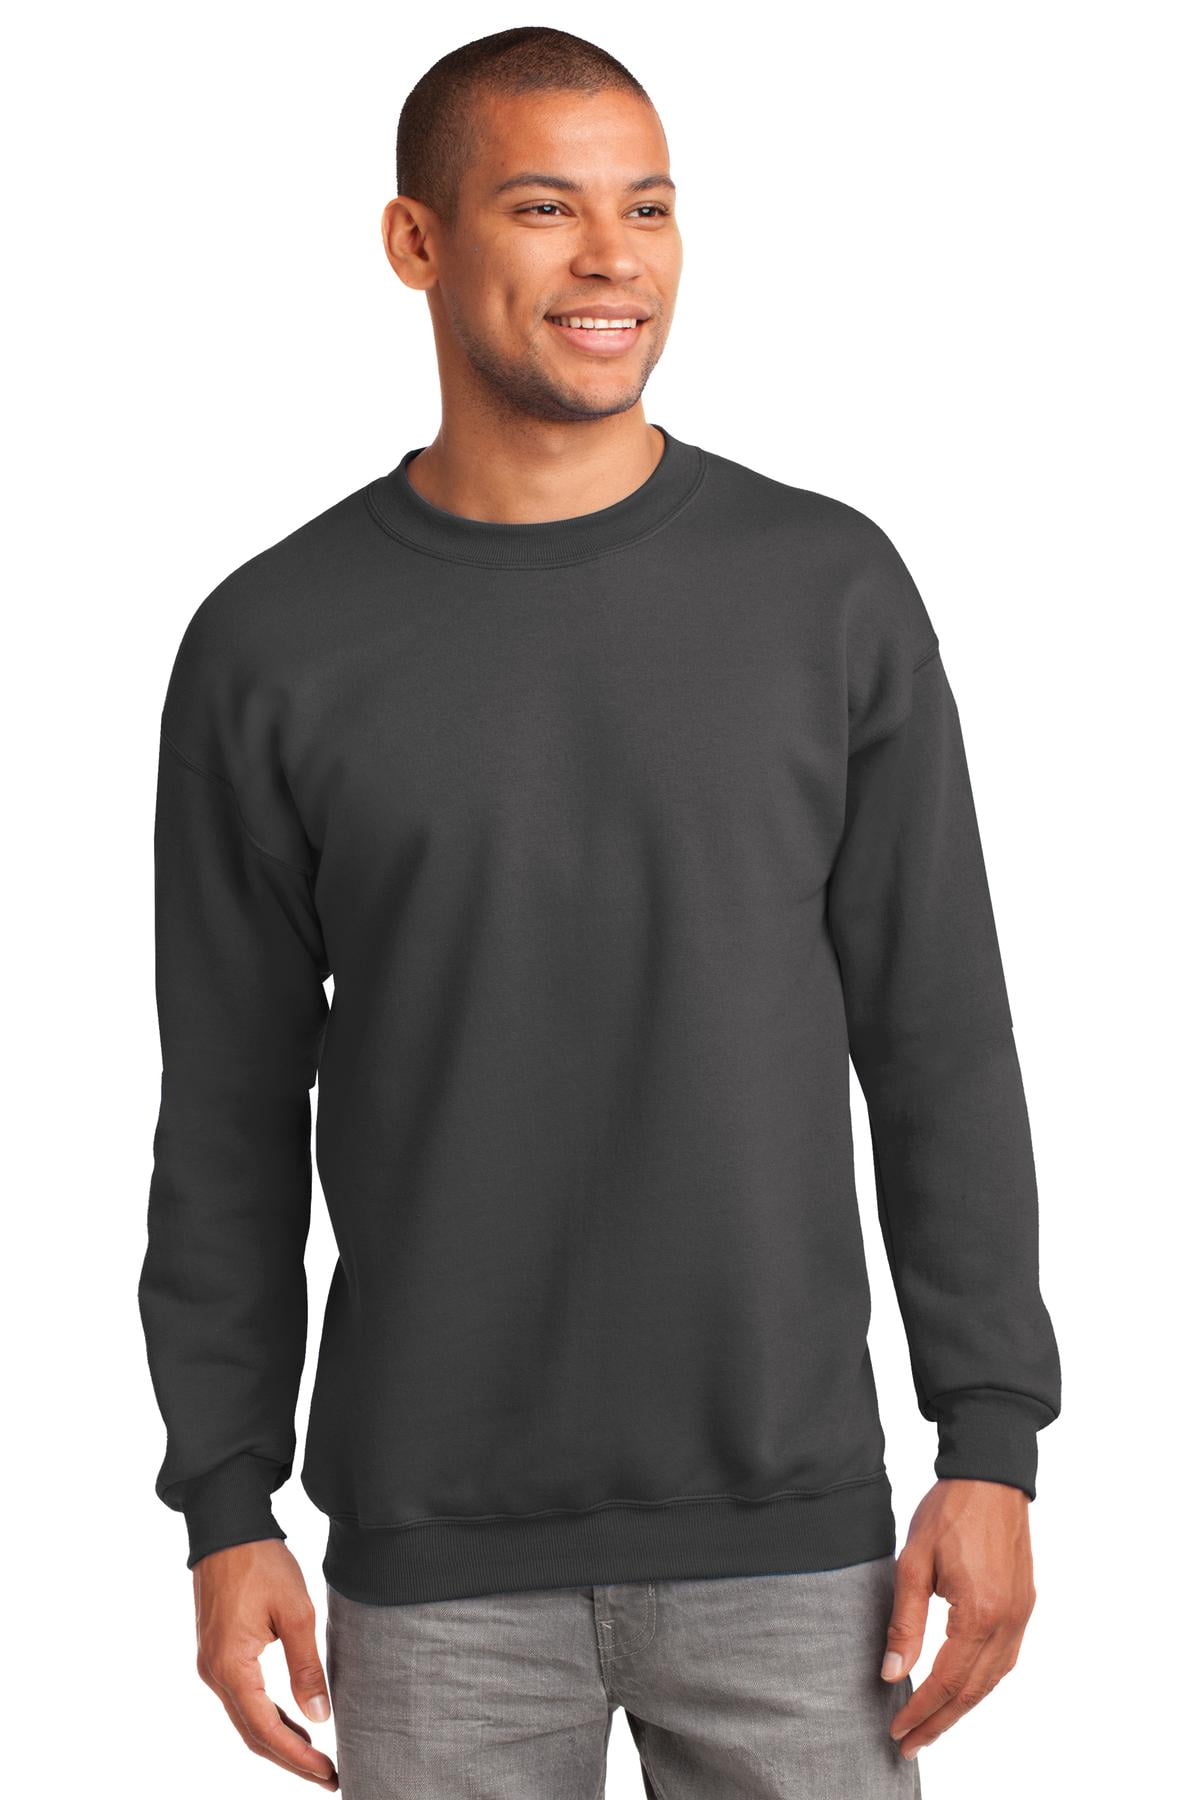 Crewneck Sweatshirt. Charcoal. L - Walmart.com